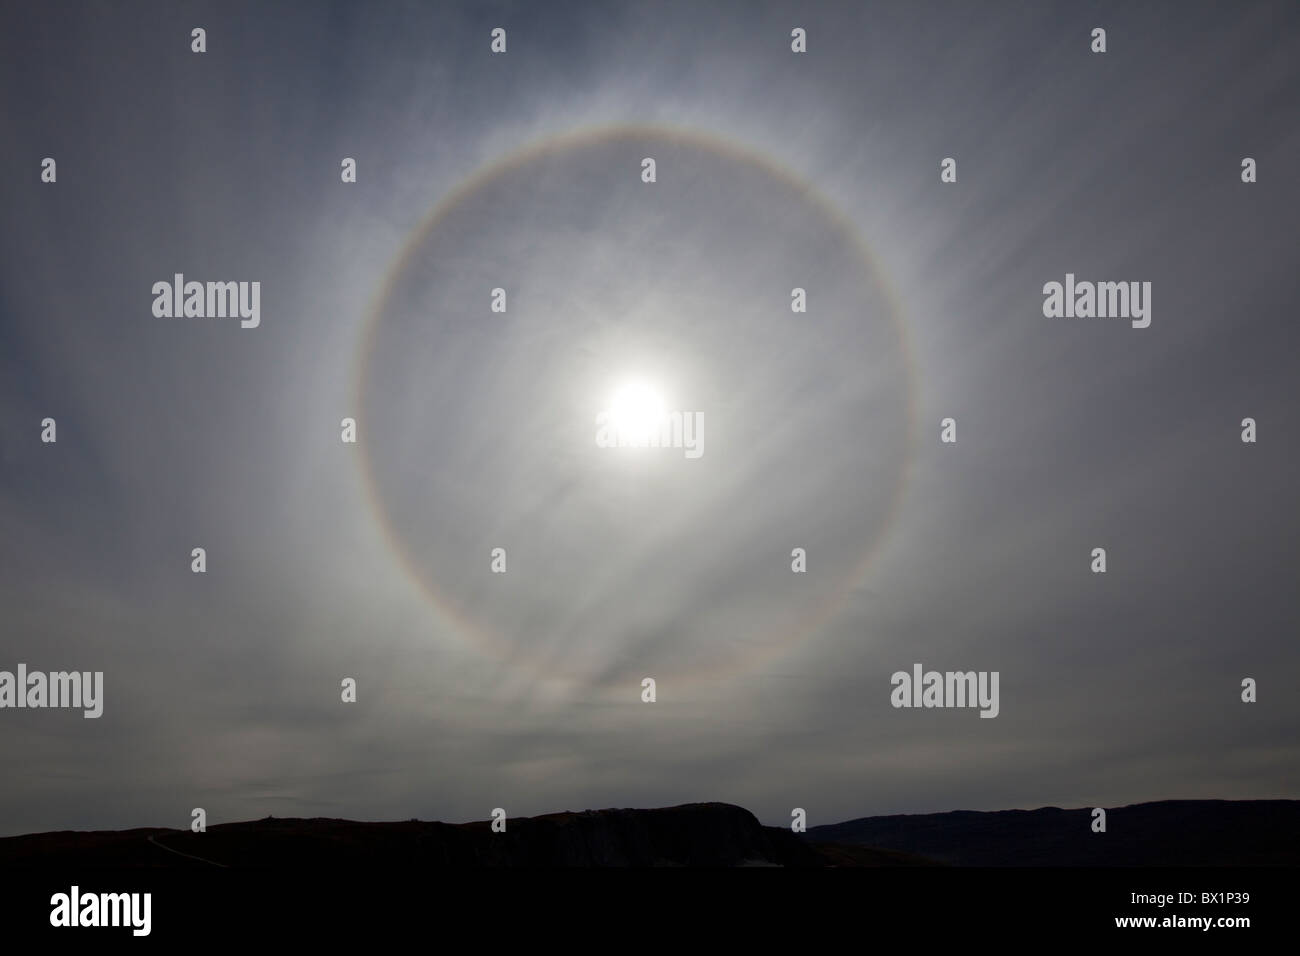 Bague soleil / halo circulaire / 22° halo provoqué par un type spécifique de cristaux de glace, le Groenland, West-Greenland Banque D'Images